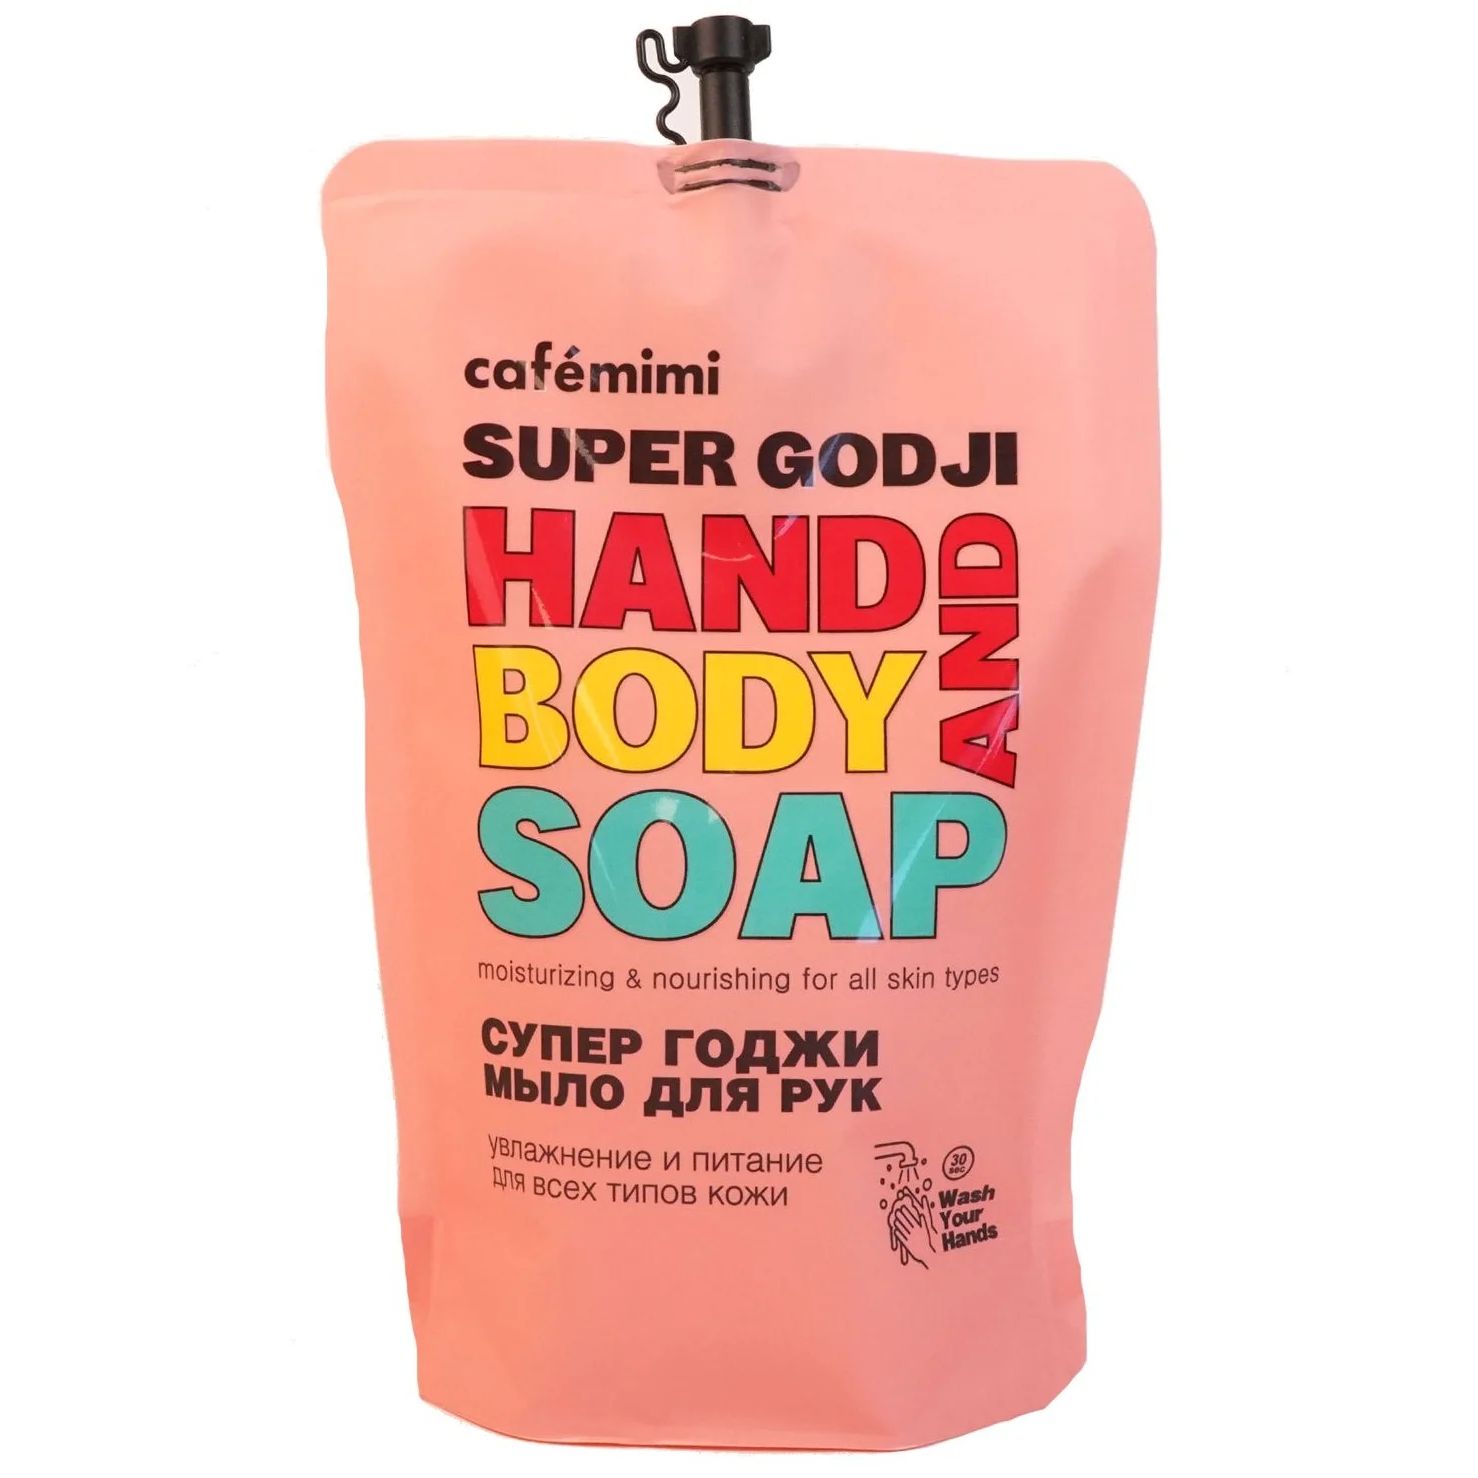 Жидкое мыло для рук, Cafe mimi, Super Food Супер годжи,  450 мл